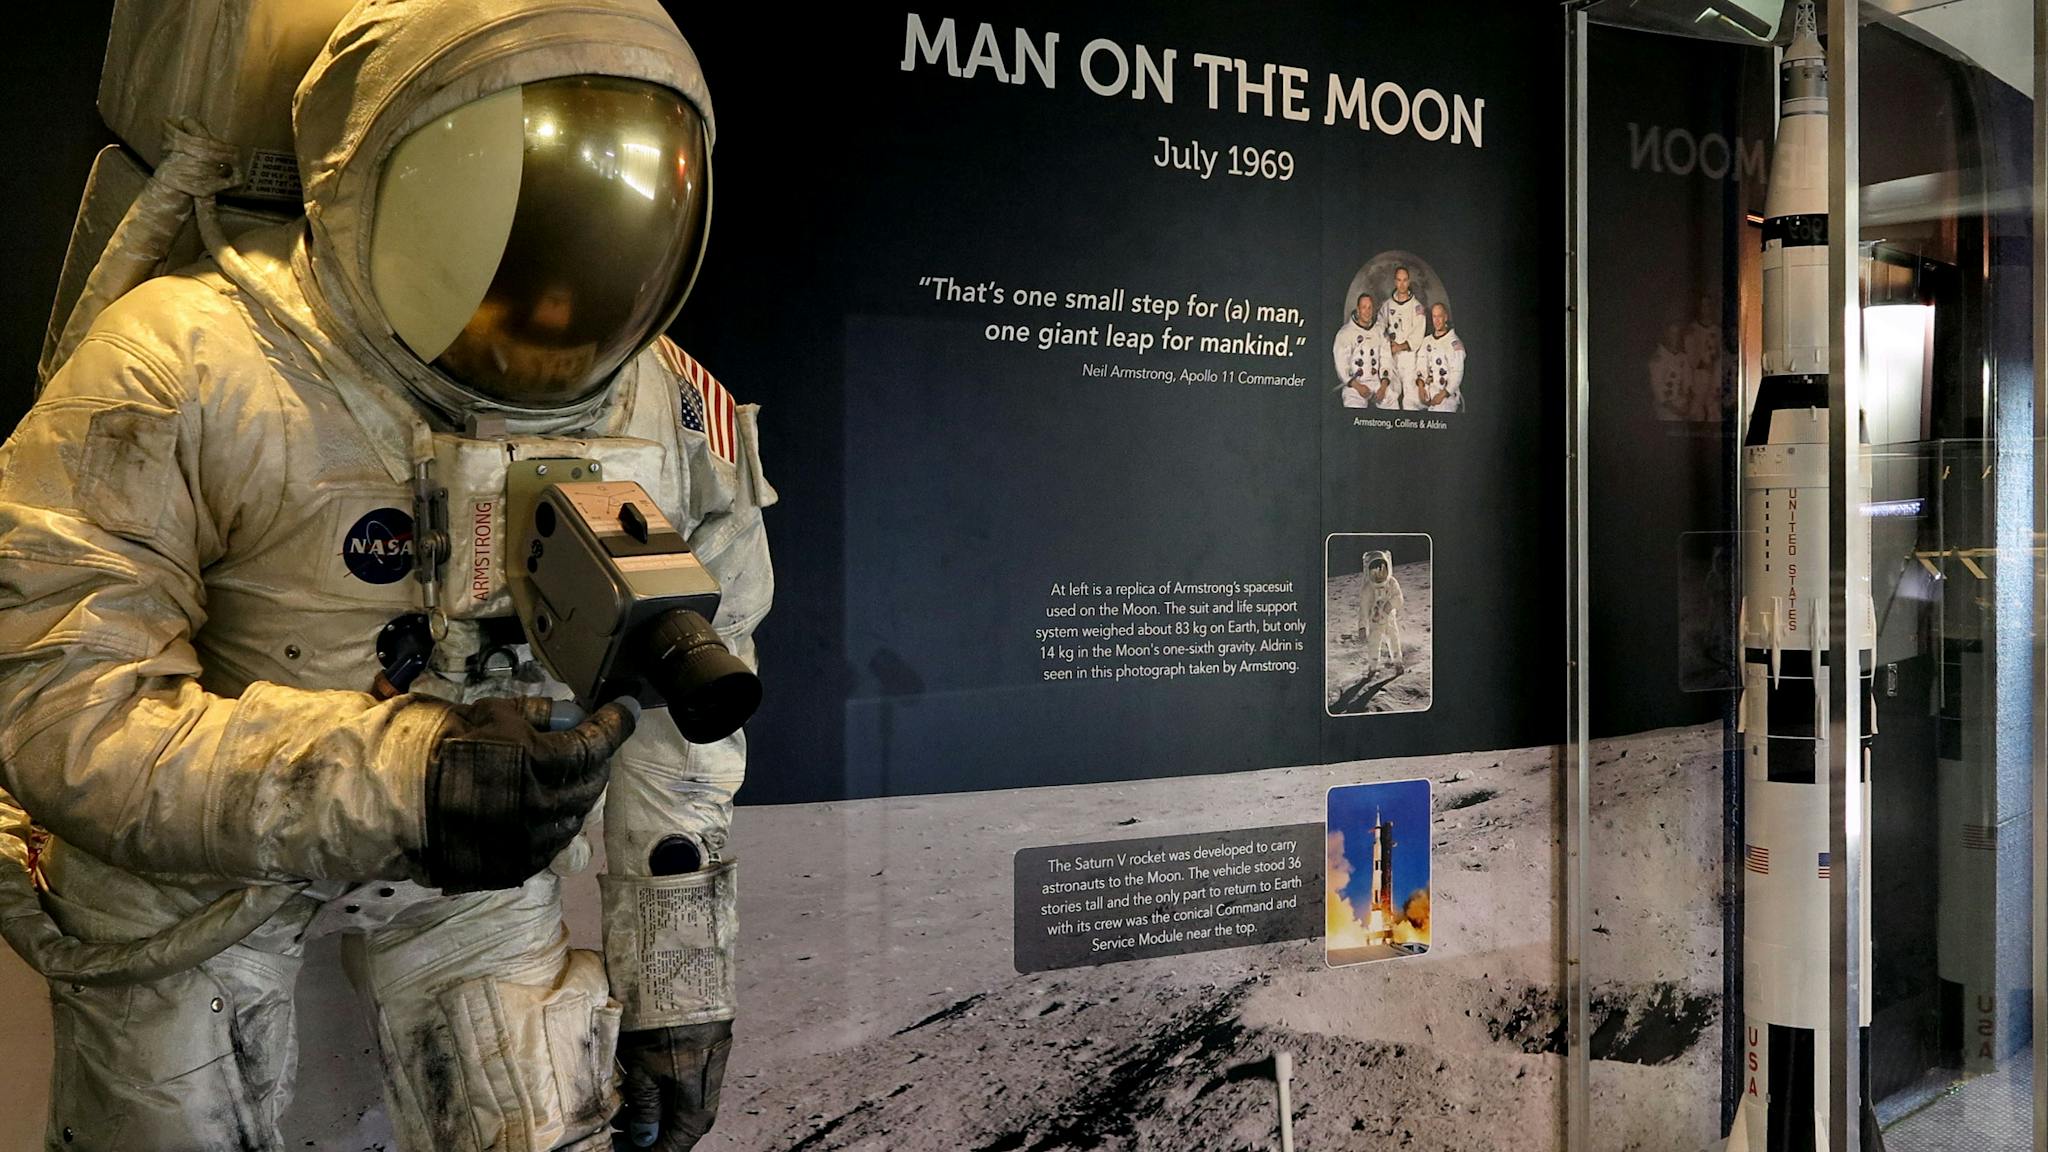 Apollo exhibit with replica lunar spacesuit